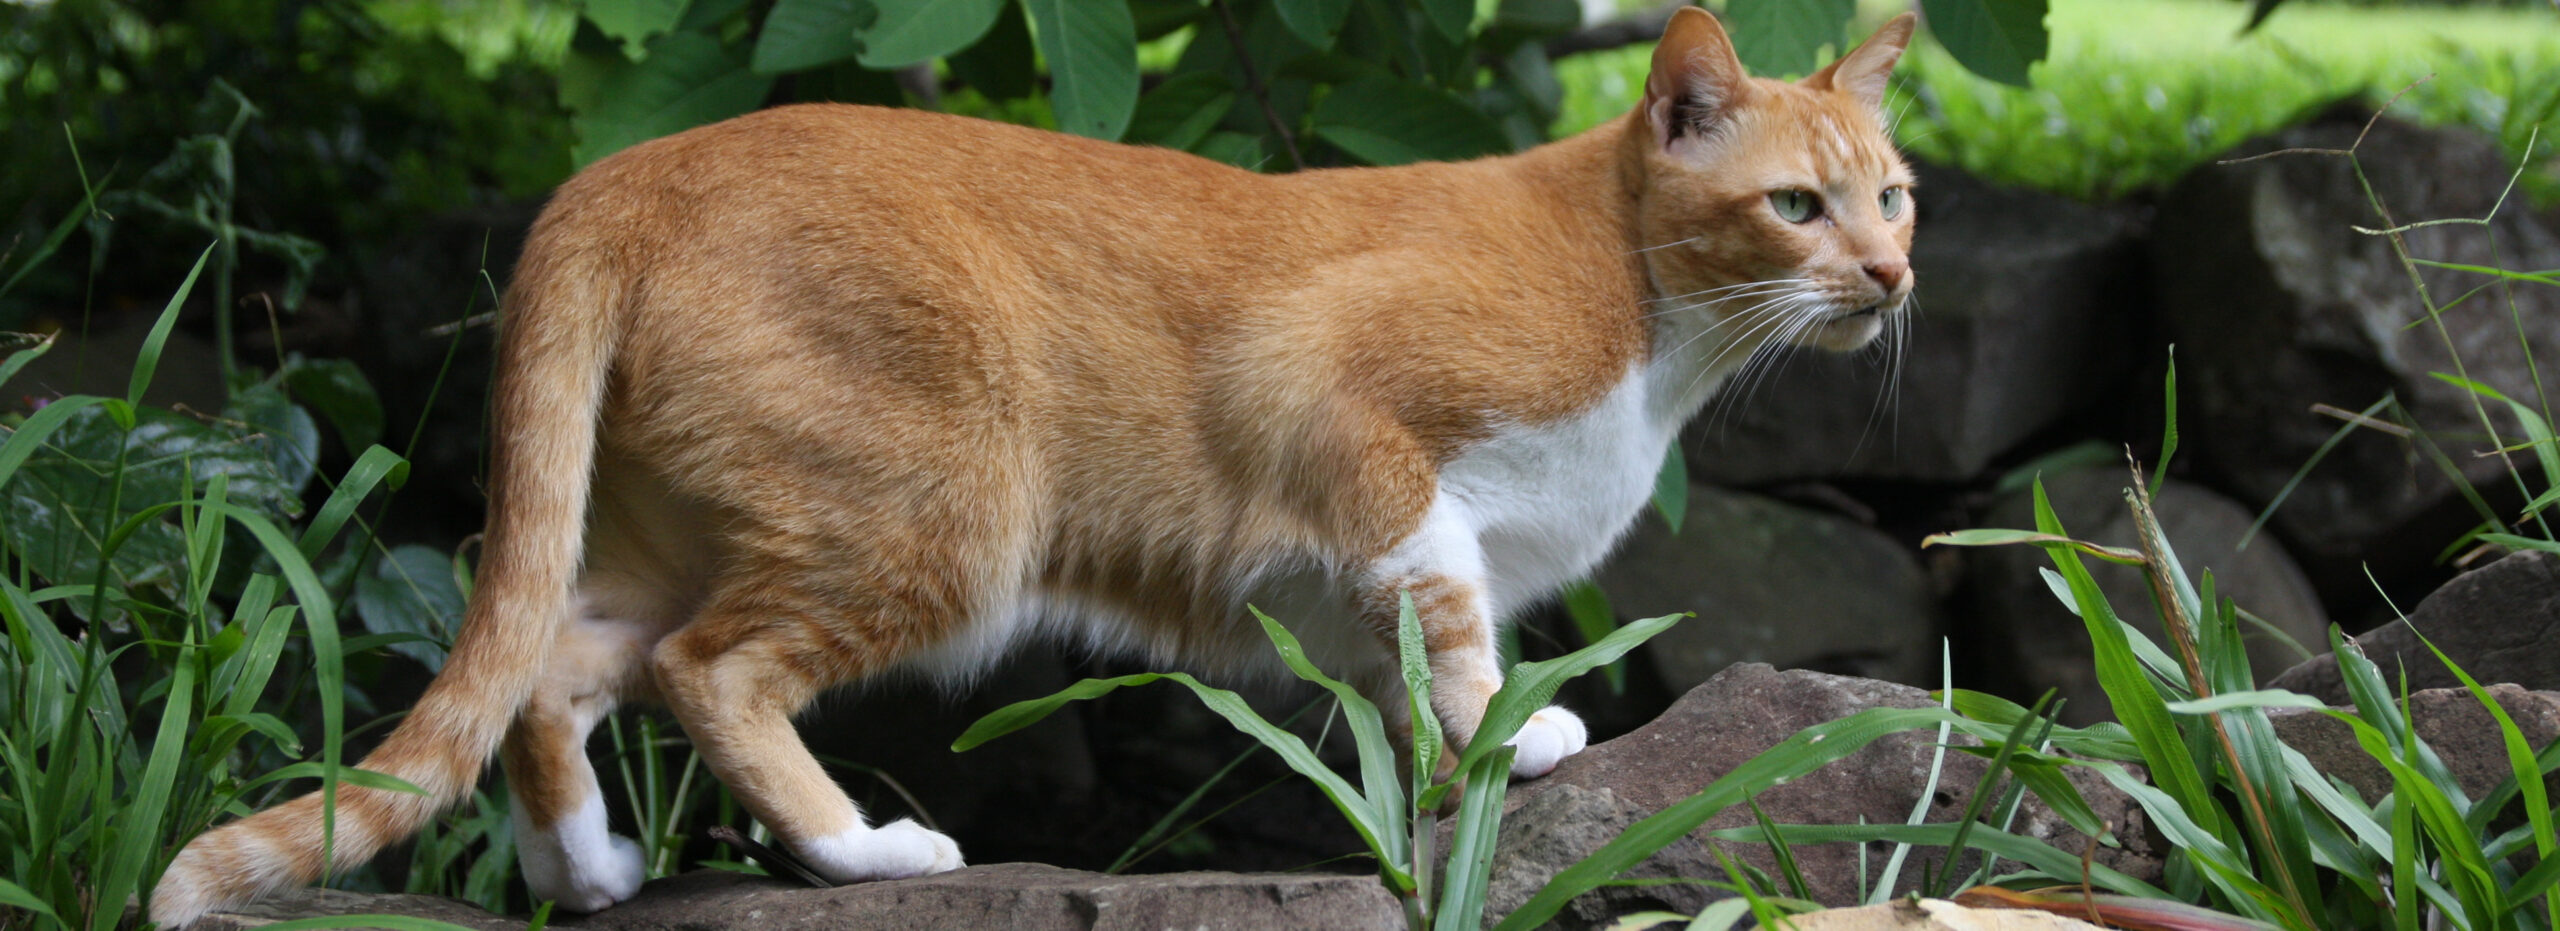 Evaluatie Beweging schroef Tip 23: katten uit de tuin - MAX Vandaag